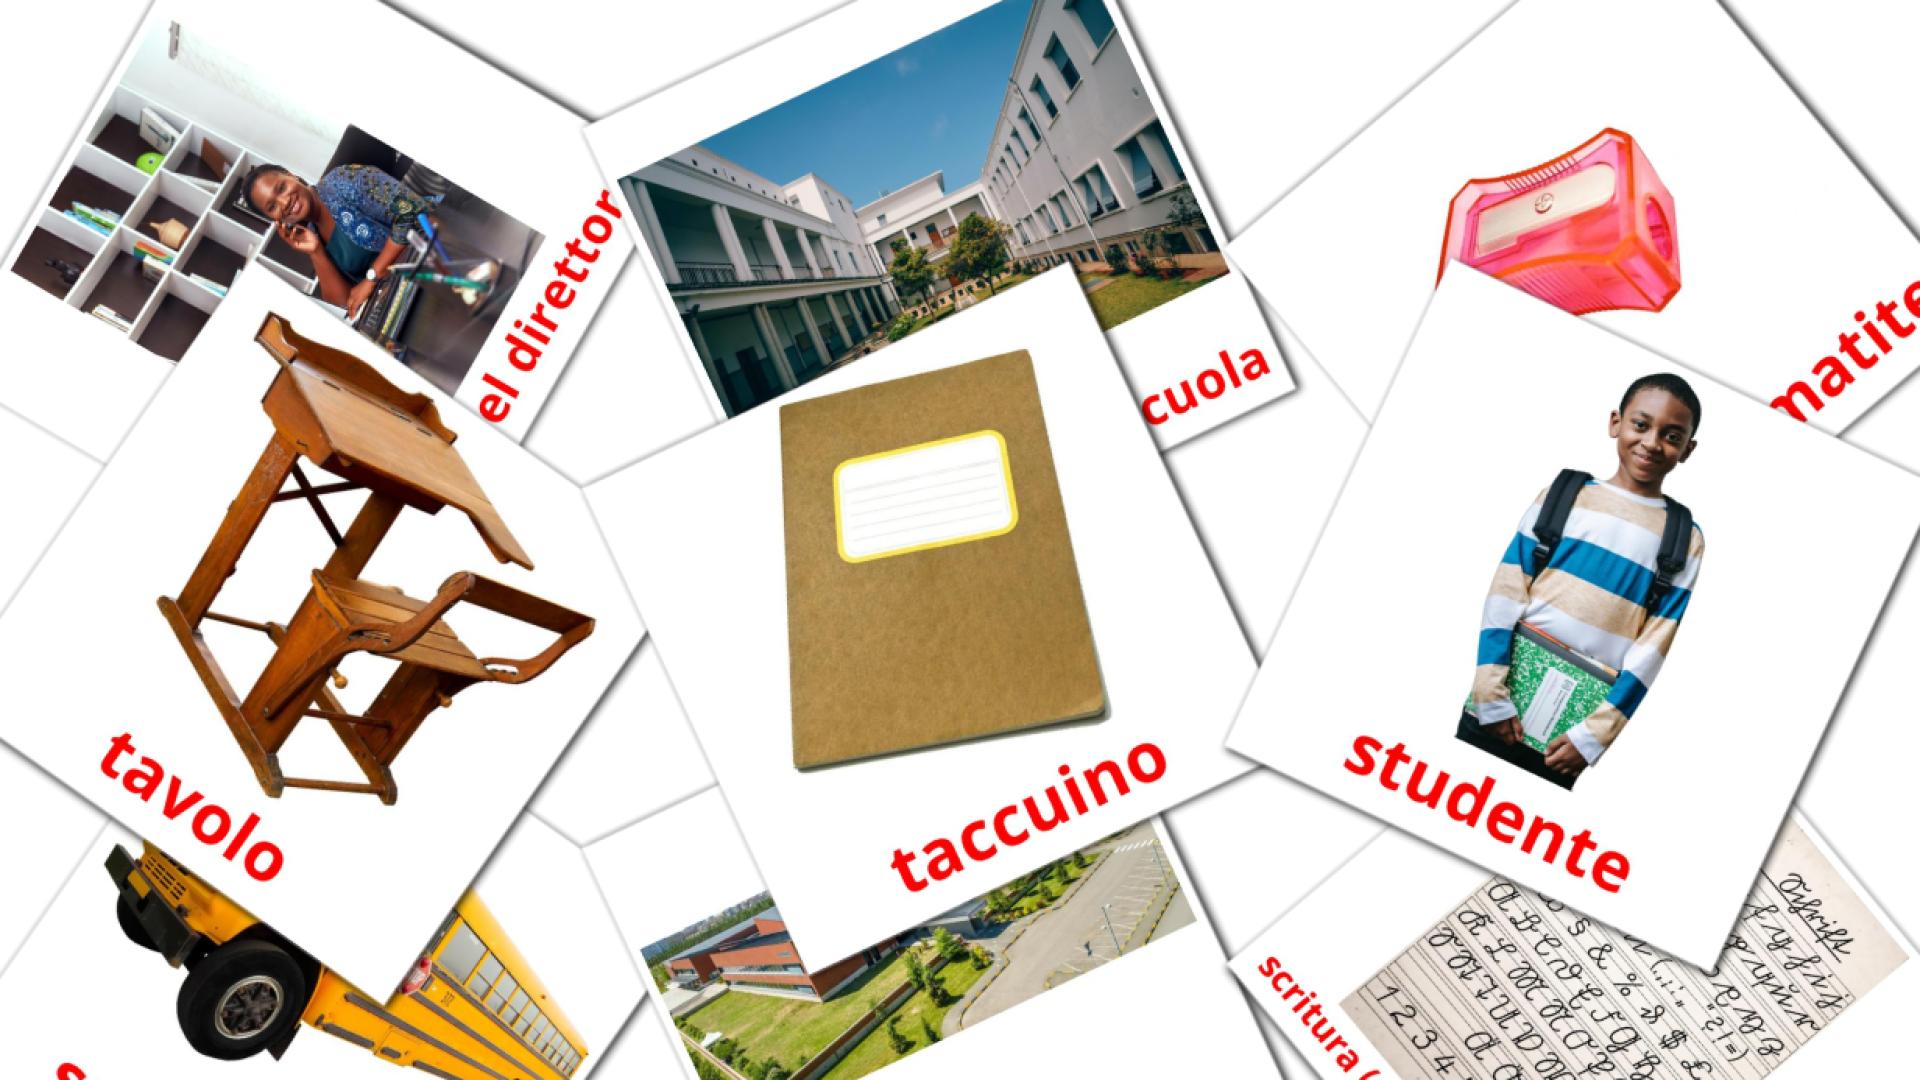 Scuola italian vocabulary flashcards